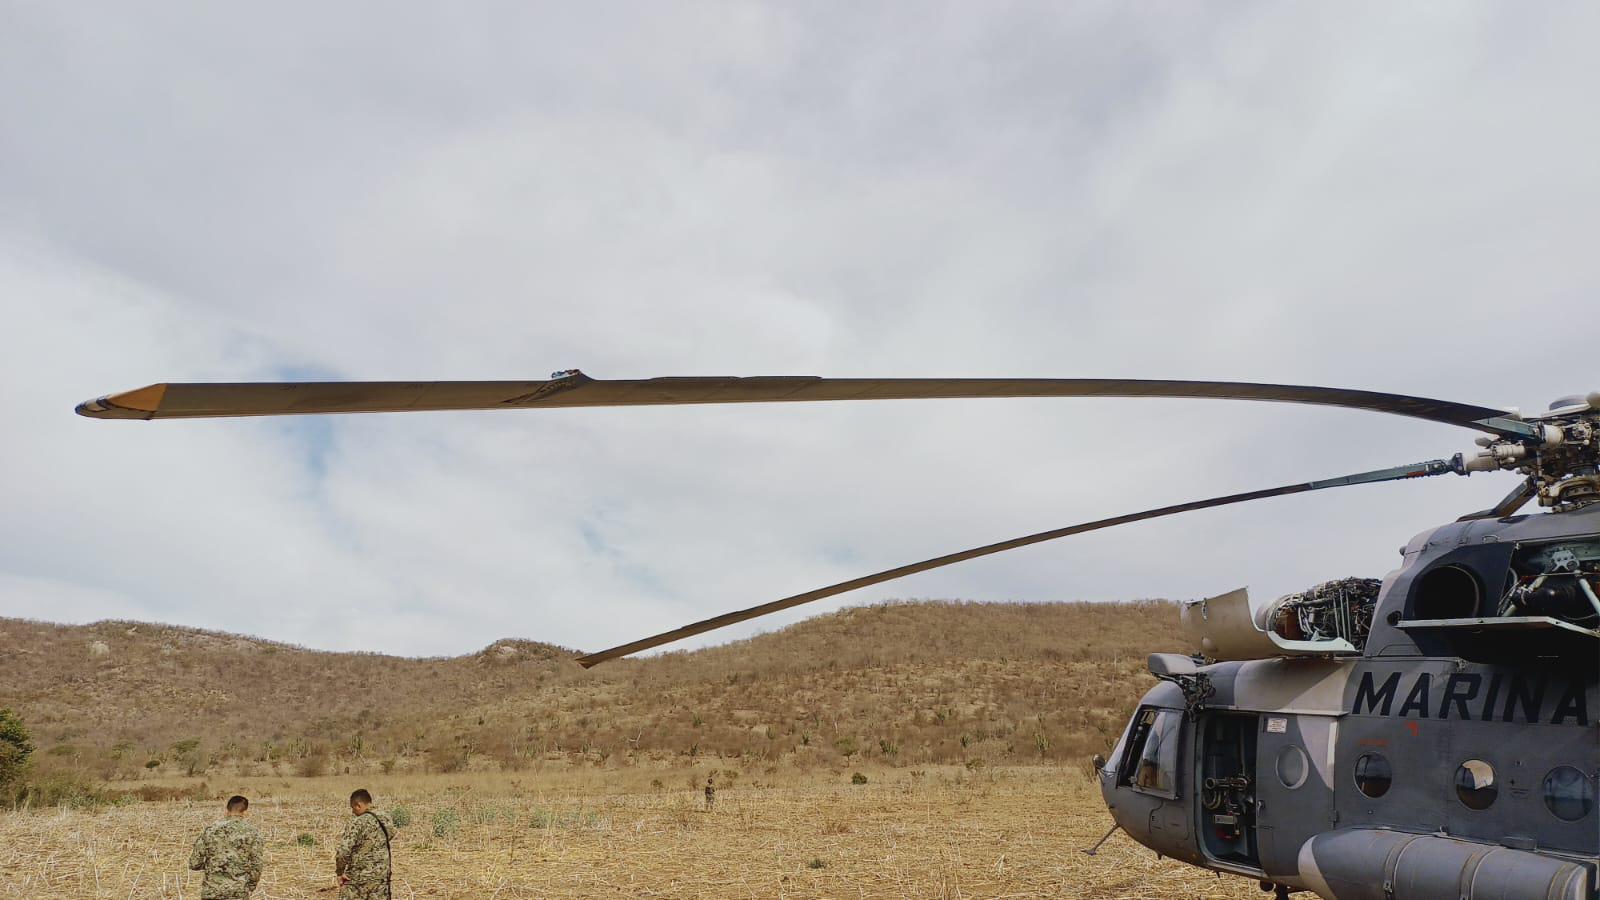 $!Helicóptero de la Marina realiza aterrizaje de emergencia al sur de Culiacán tras tocar cables de la luz